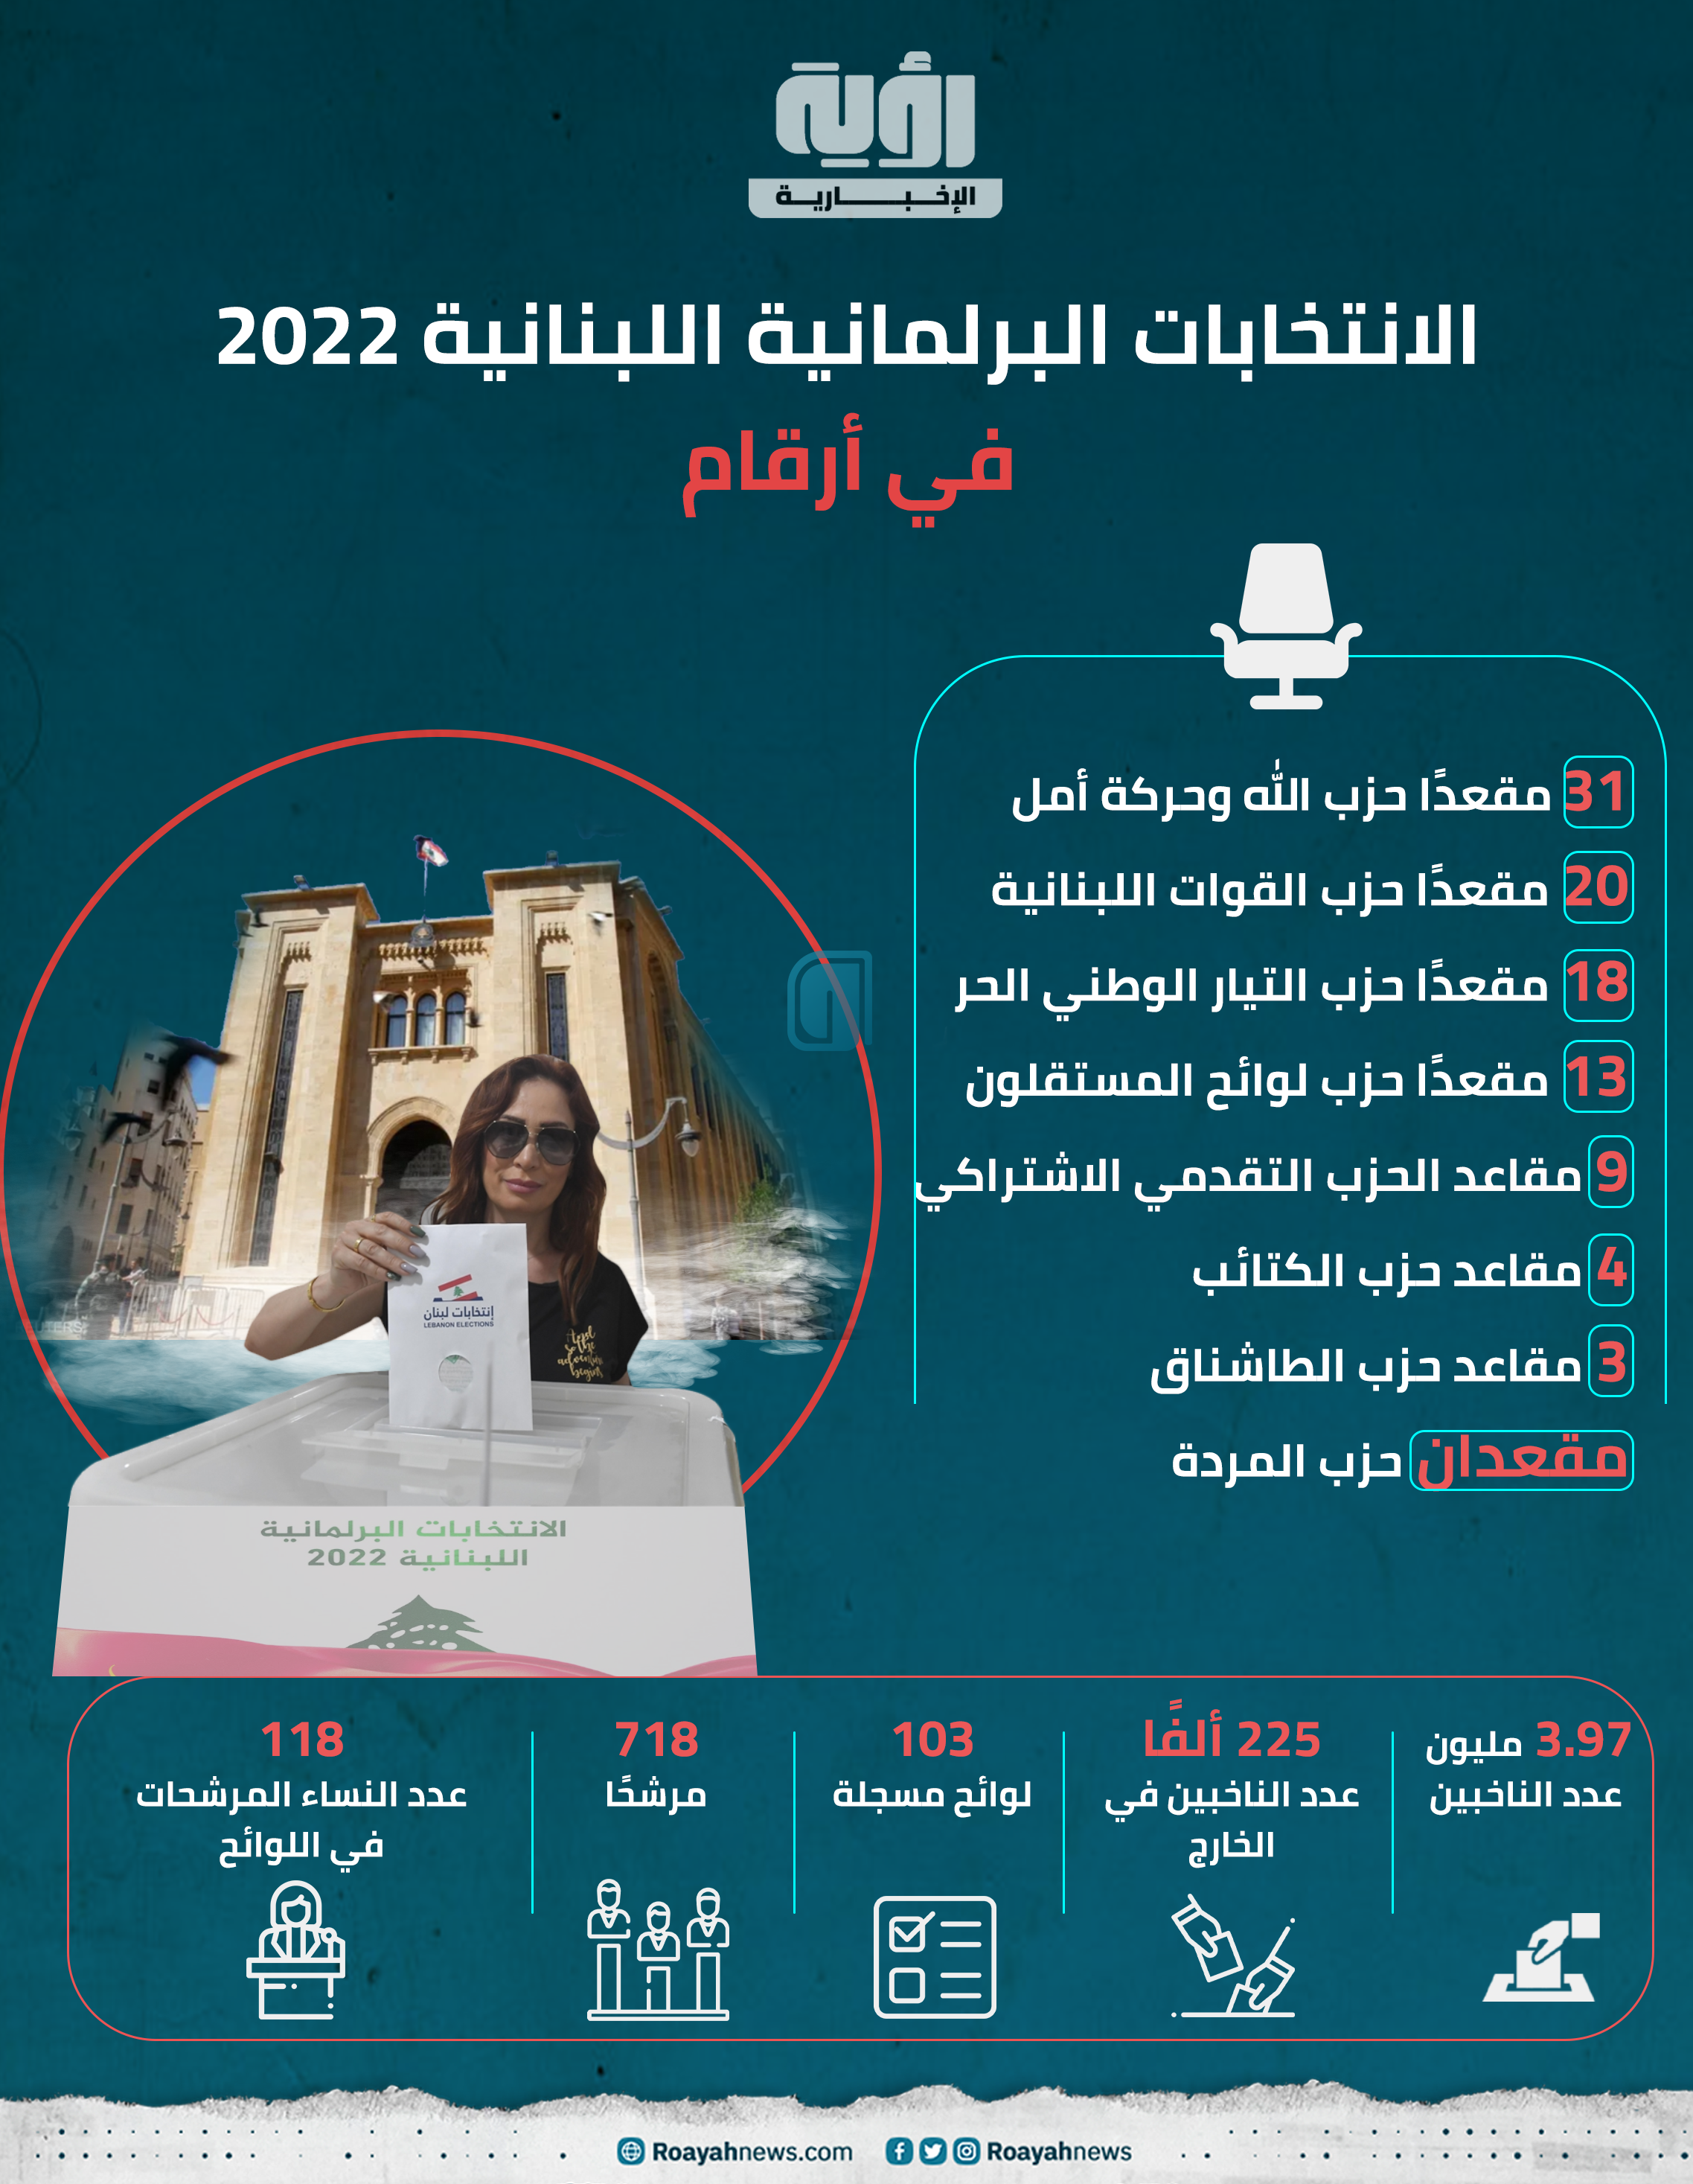 الانتخابات البرلمانية اللبنانية 2022 في أرقام